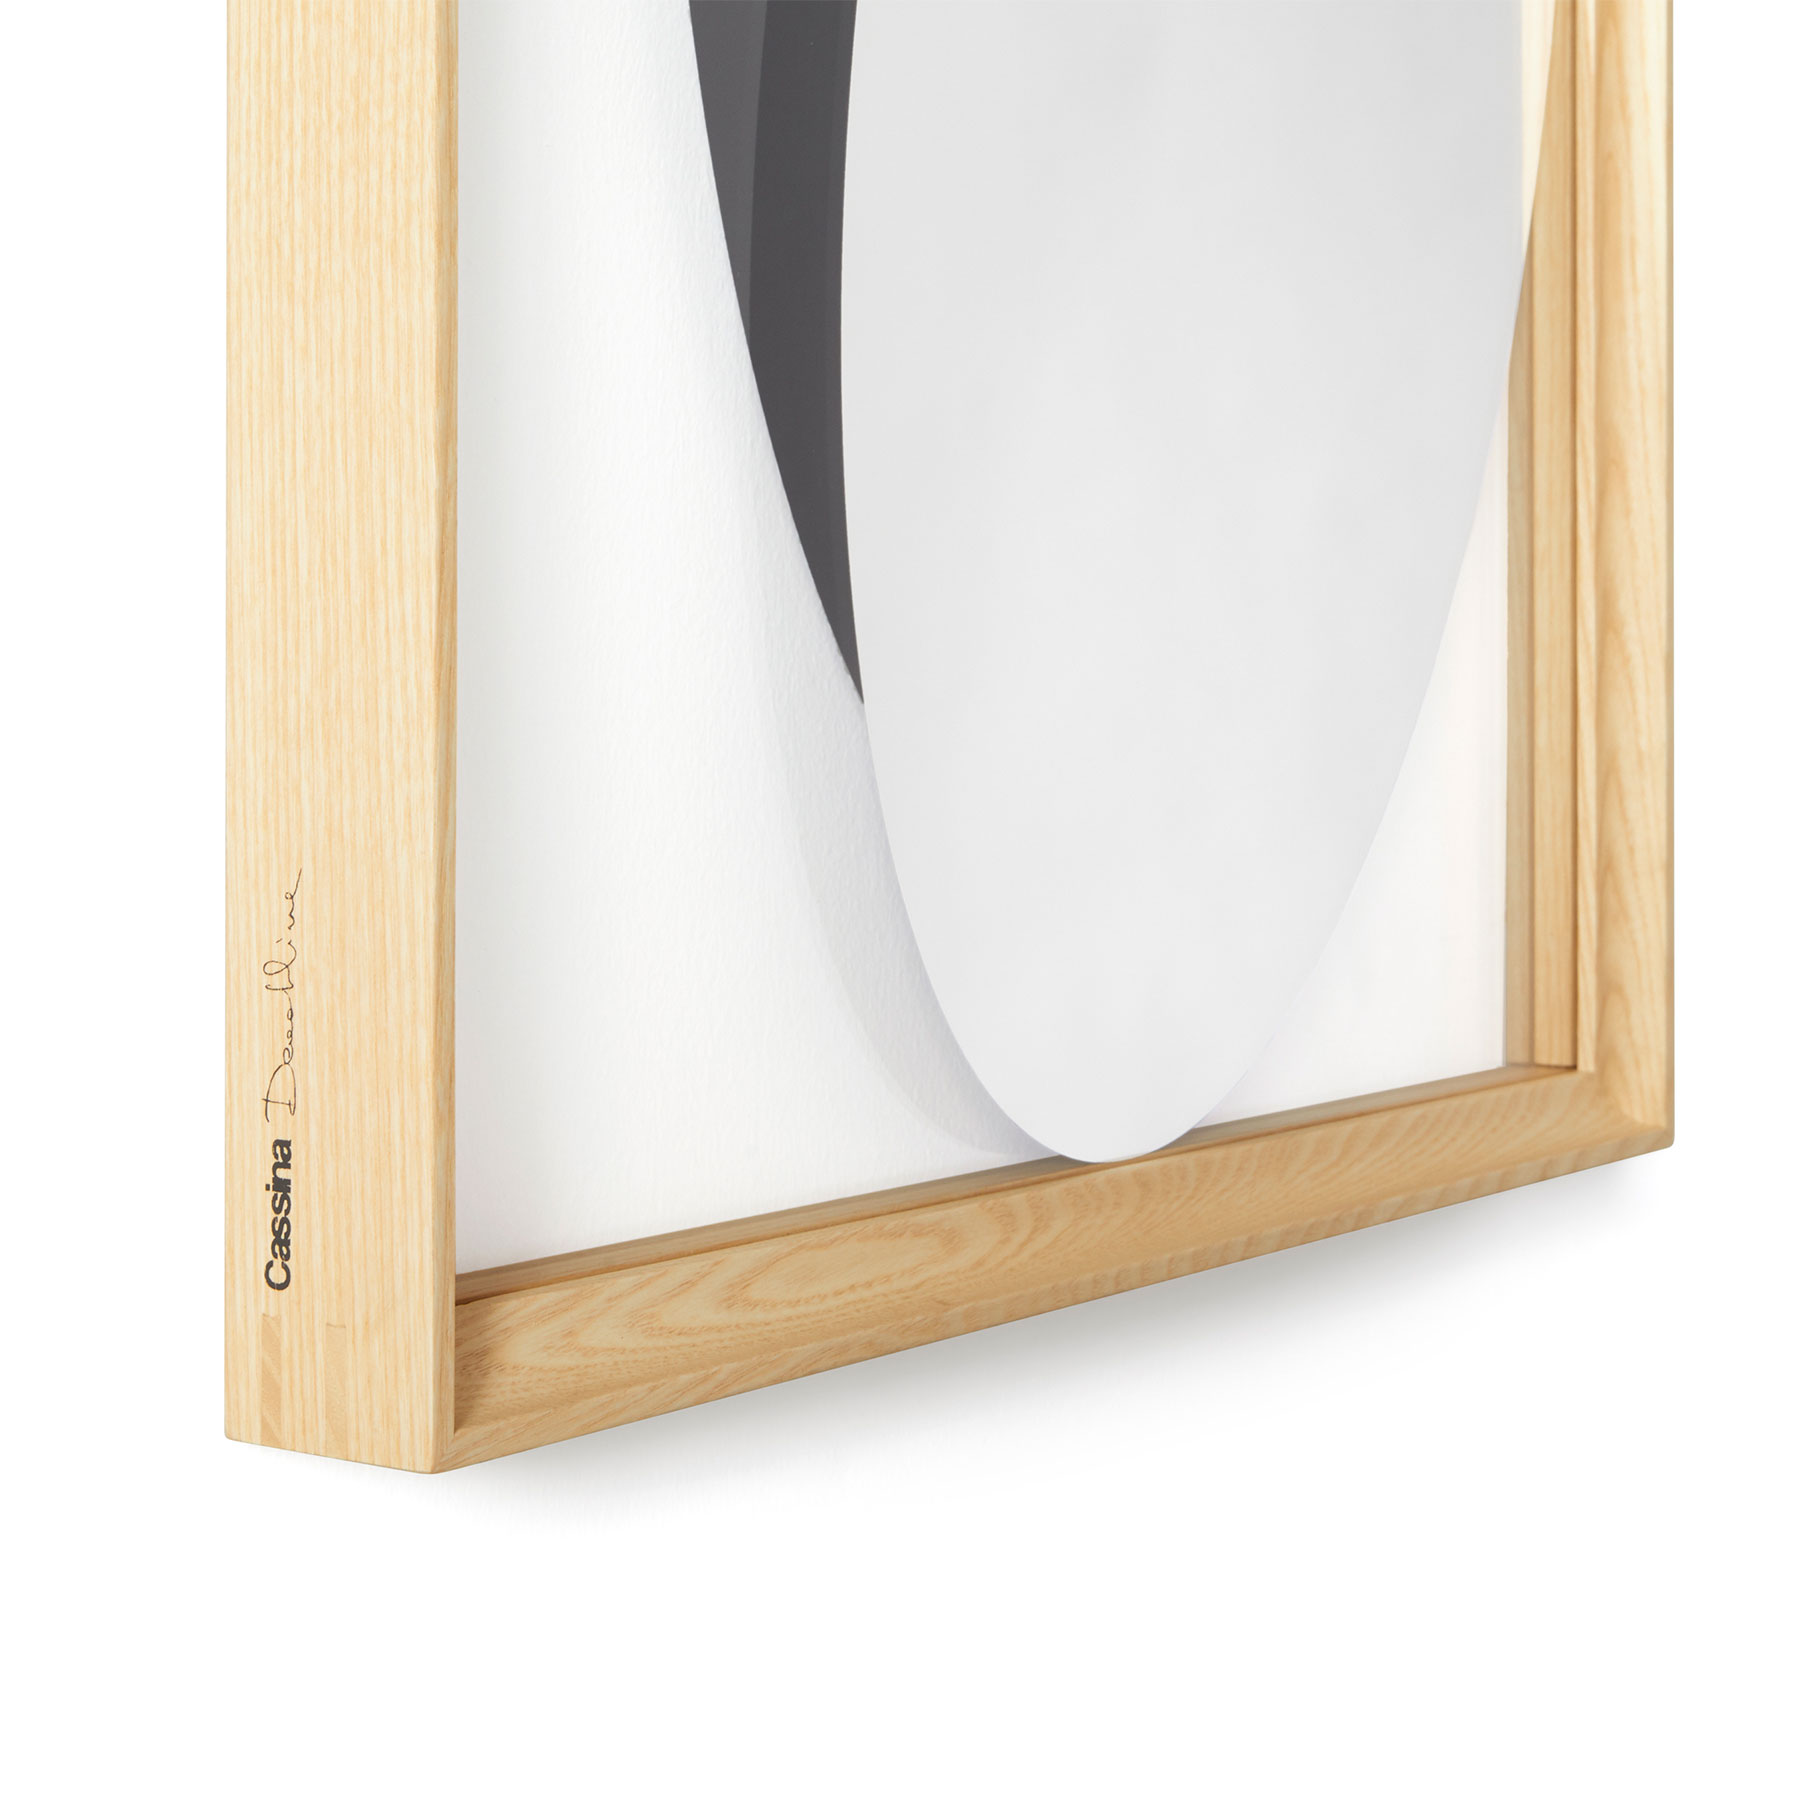 Spiegel Deadline 33 Rahmen Esche Natur 40 x 170 cm